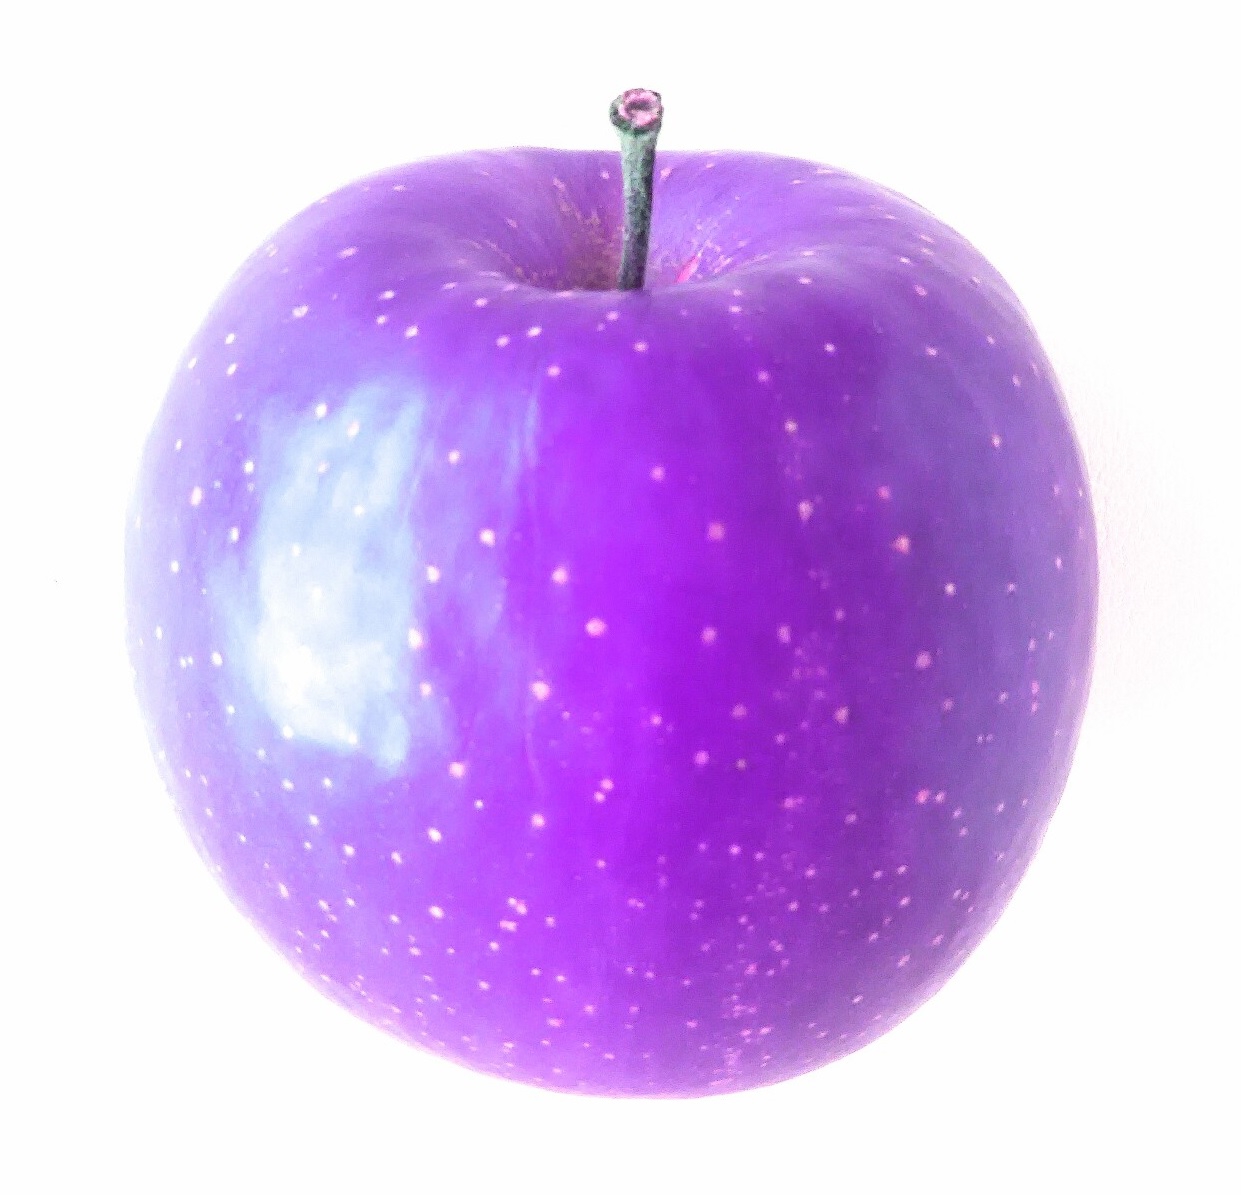 紫色のリンゴを選んだ人は 色とストレスの関係